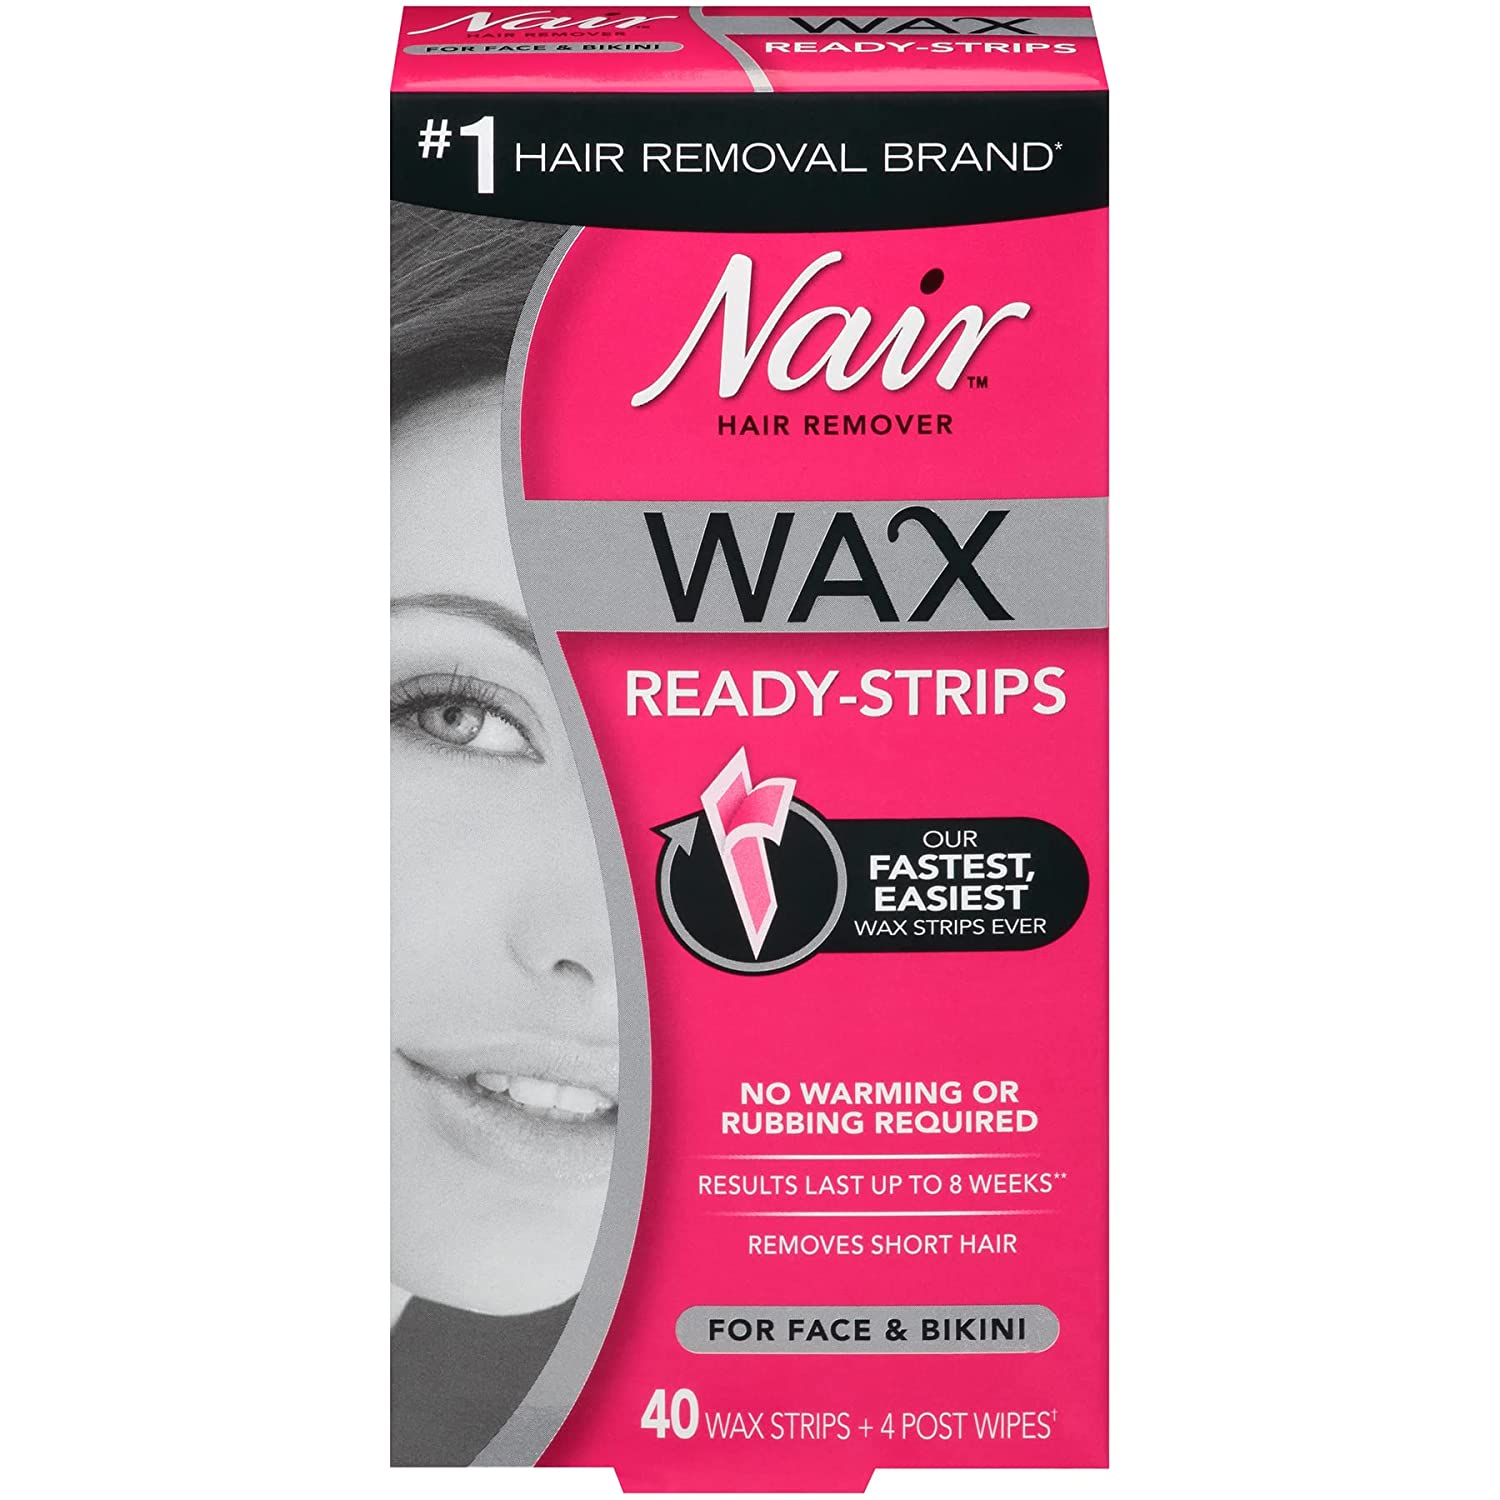 Nair Hair Remover Wax Ready-Strips for Face & Bikini